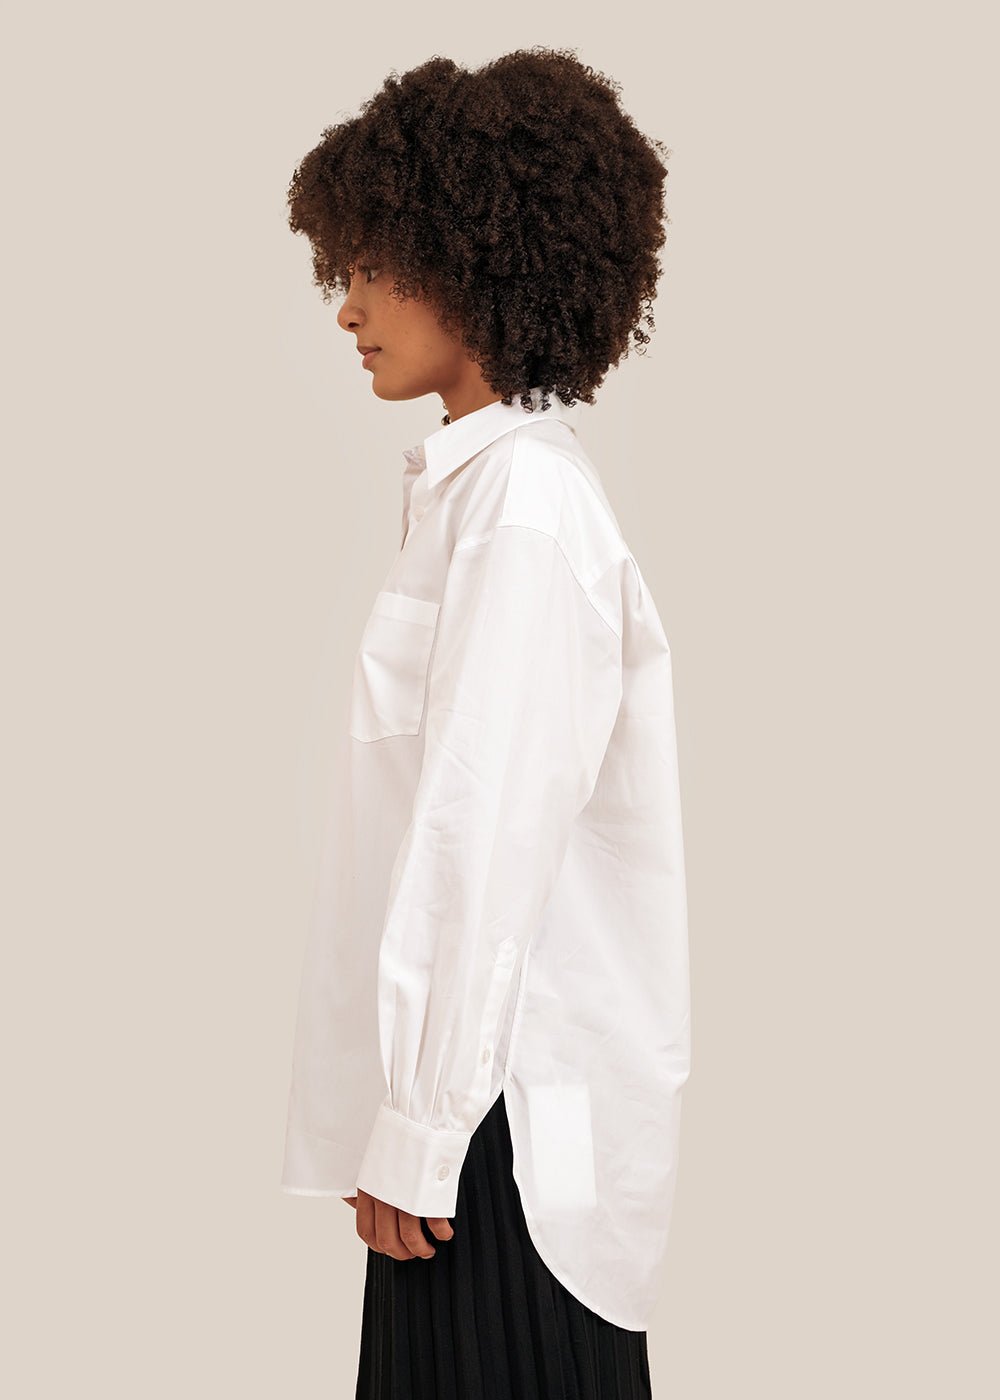 Filippa K White Sammy Shirt - New Classics Studios Sustainable Ethical Fashion Canada